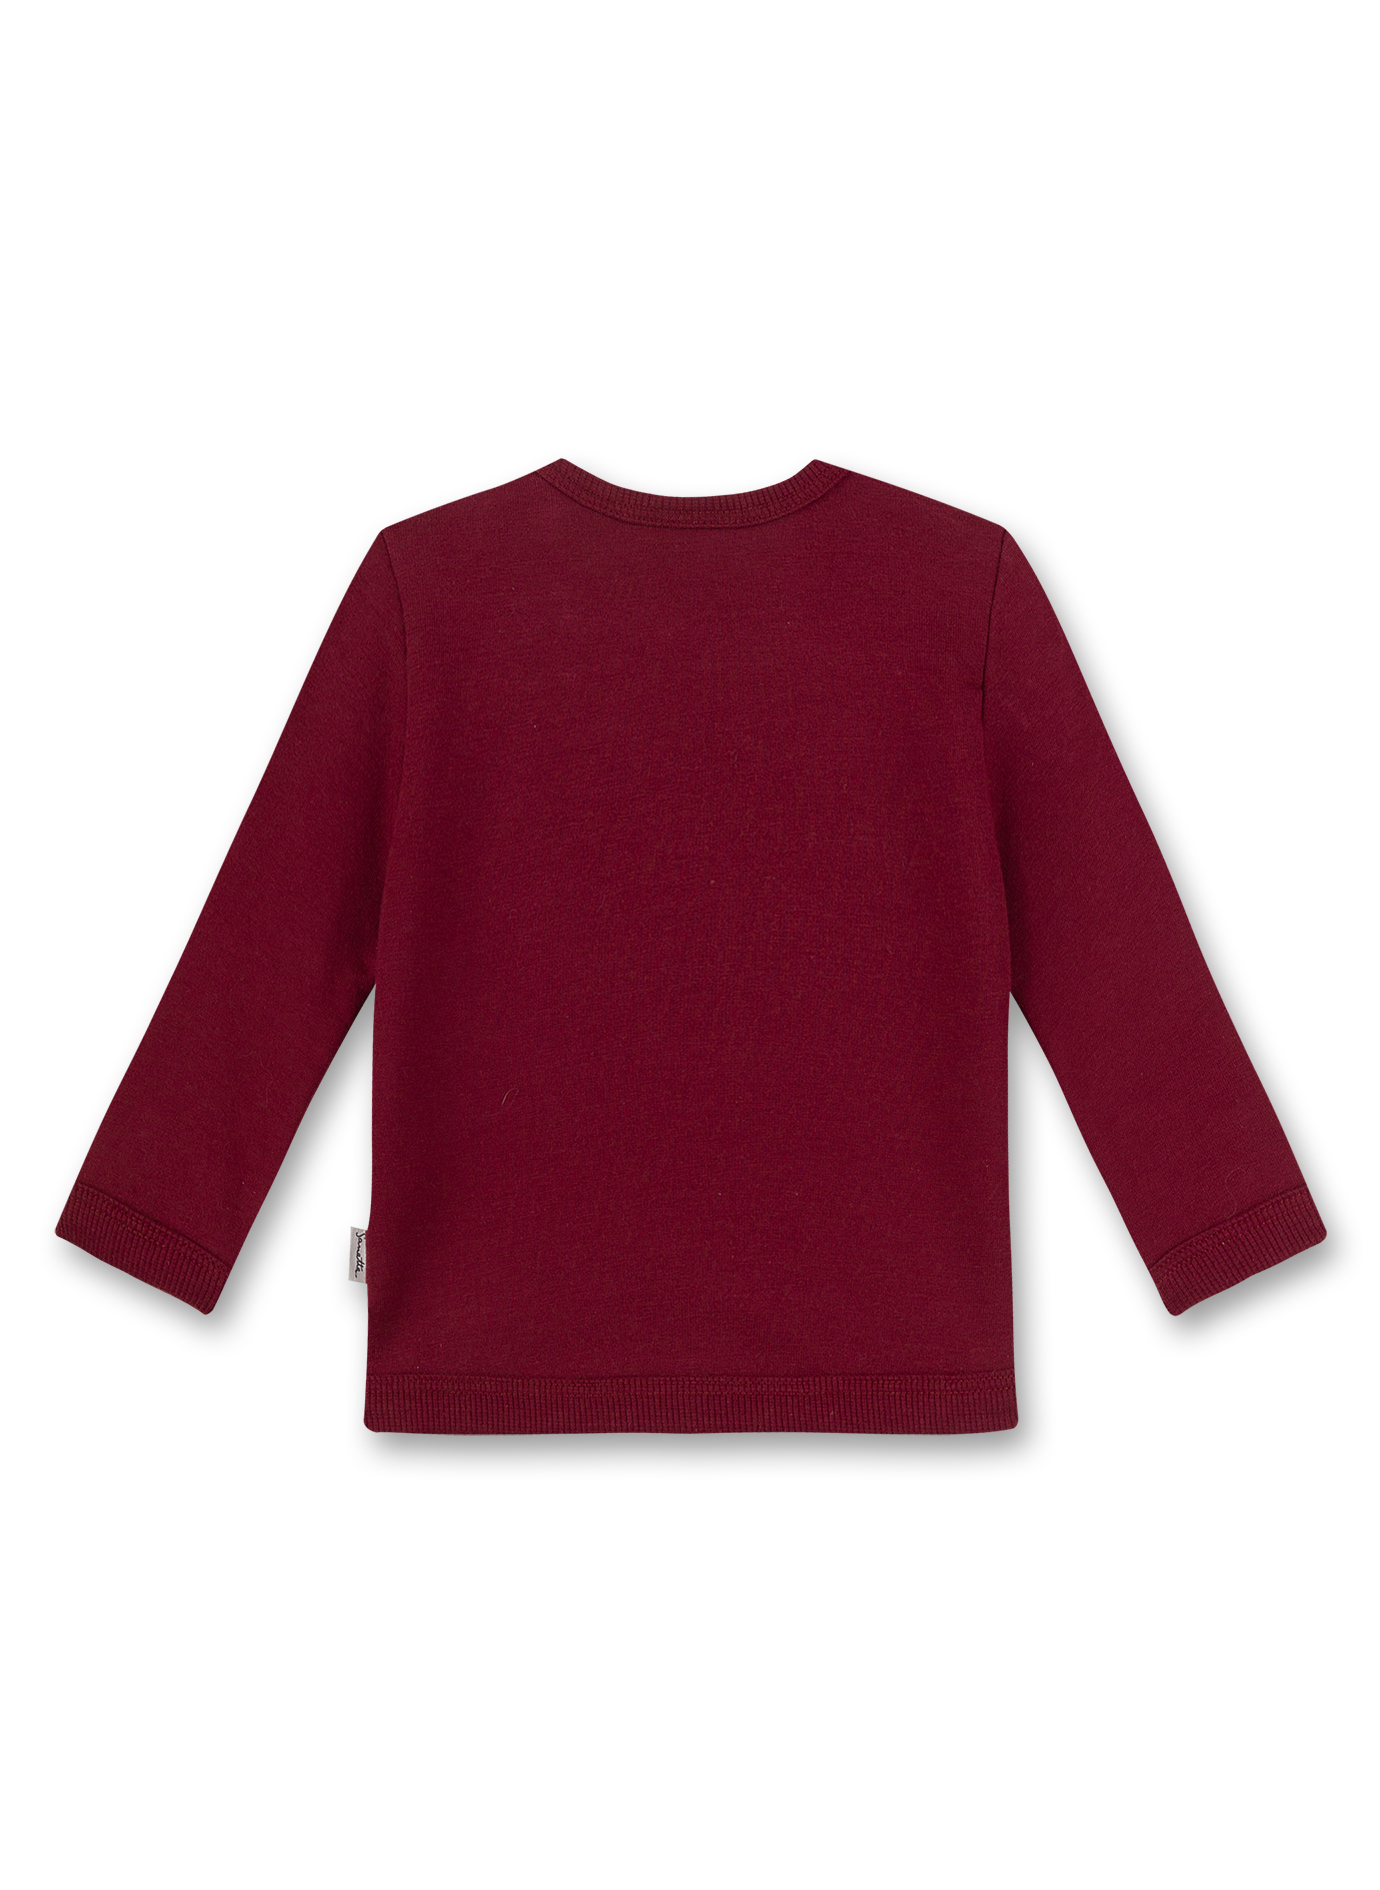 Mädchen-Sweatshirt Rot Little Birdie